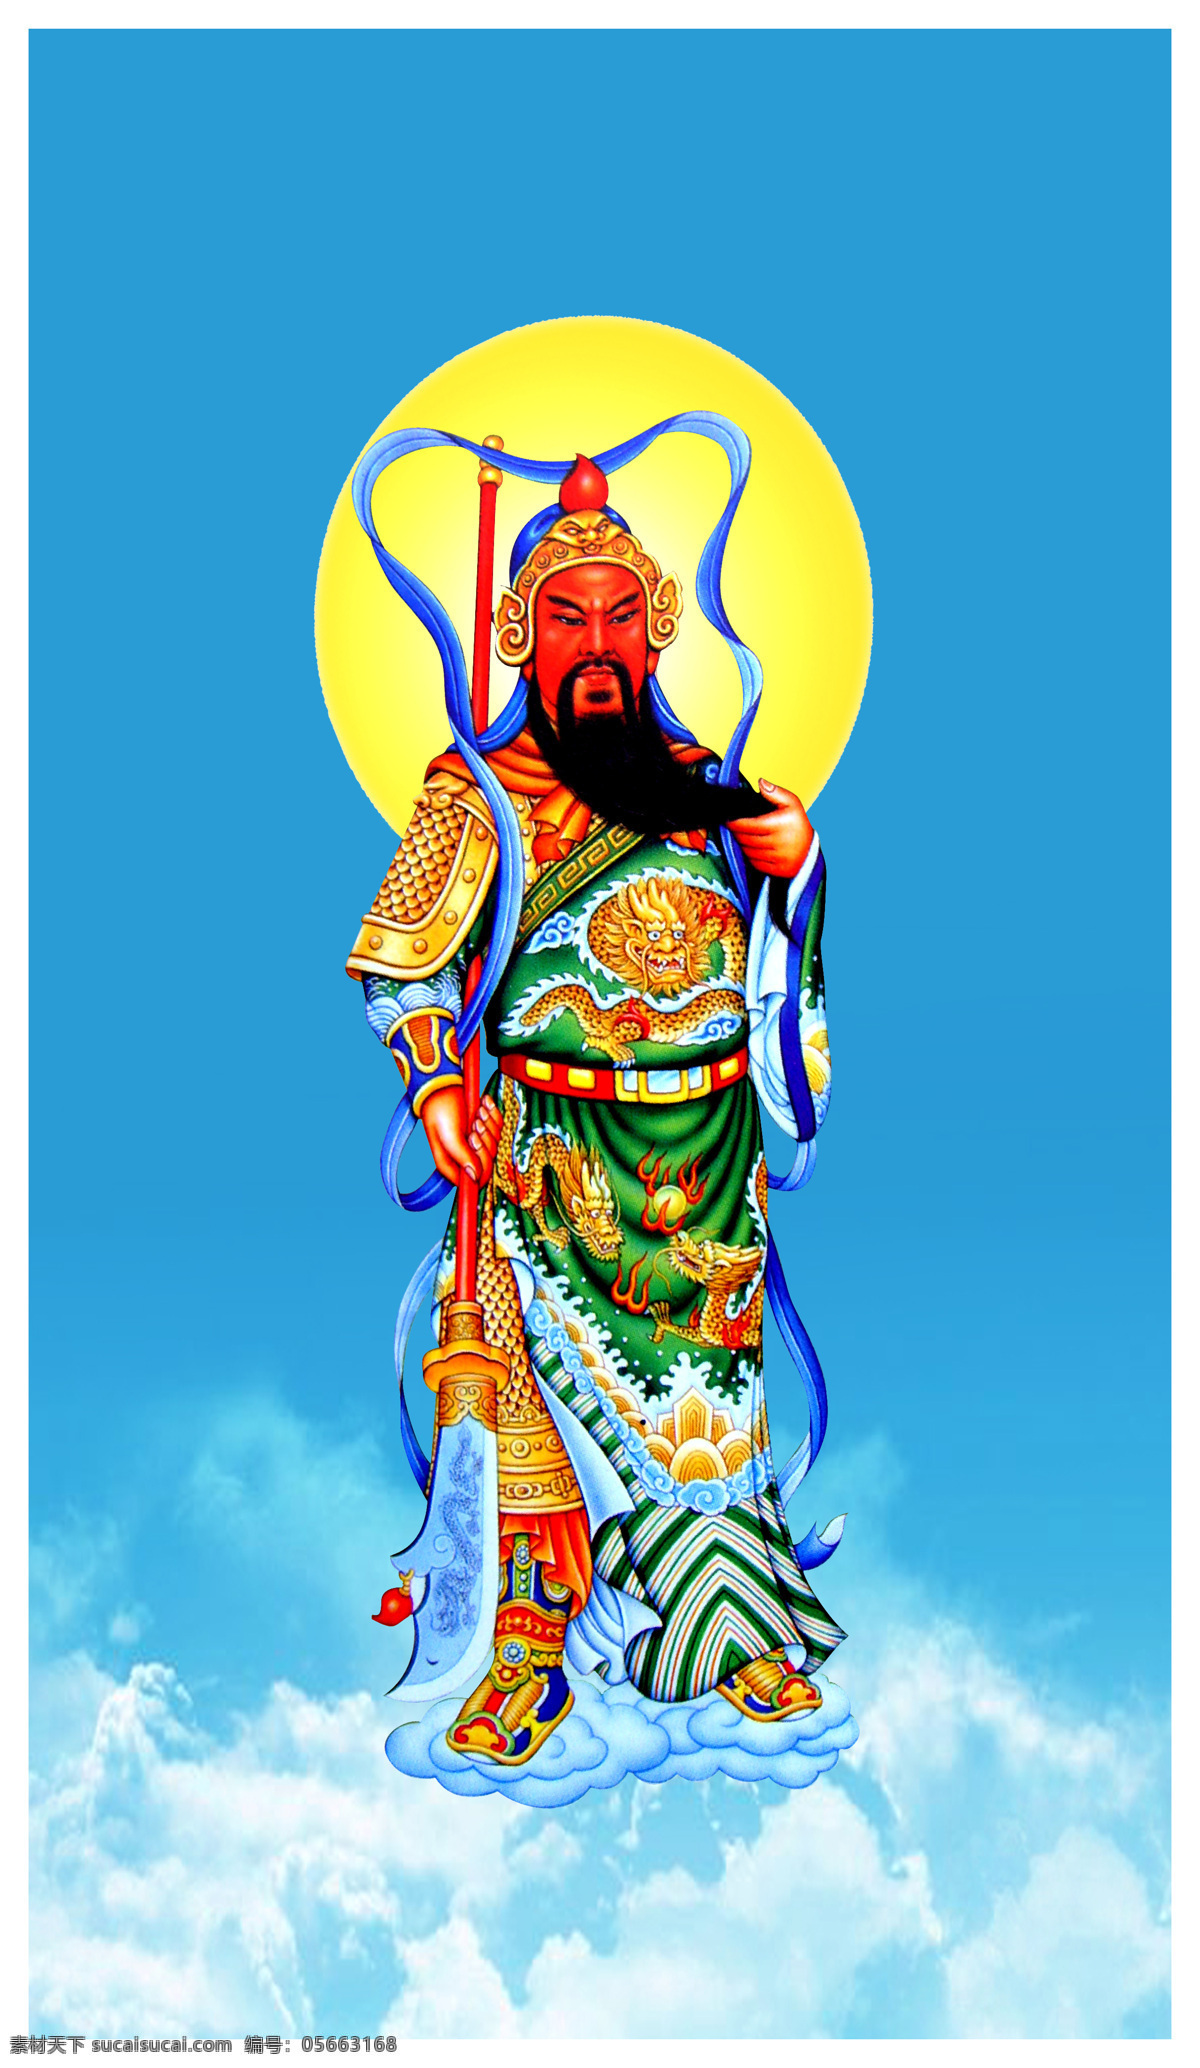 伽蓝 菩萨 佛教 文化艺术 宗教信仰 伽蓝菩萨 护法神